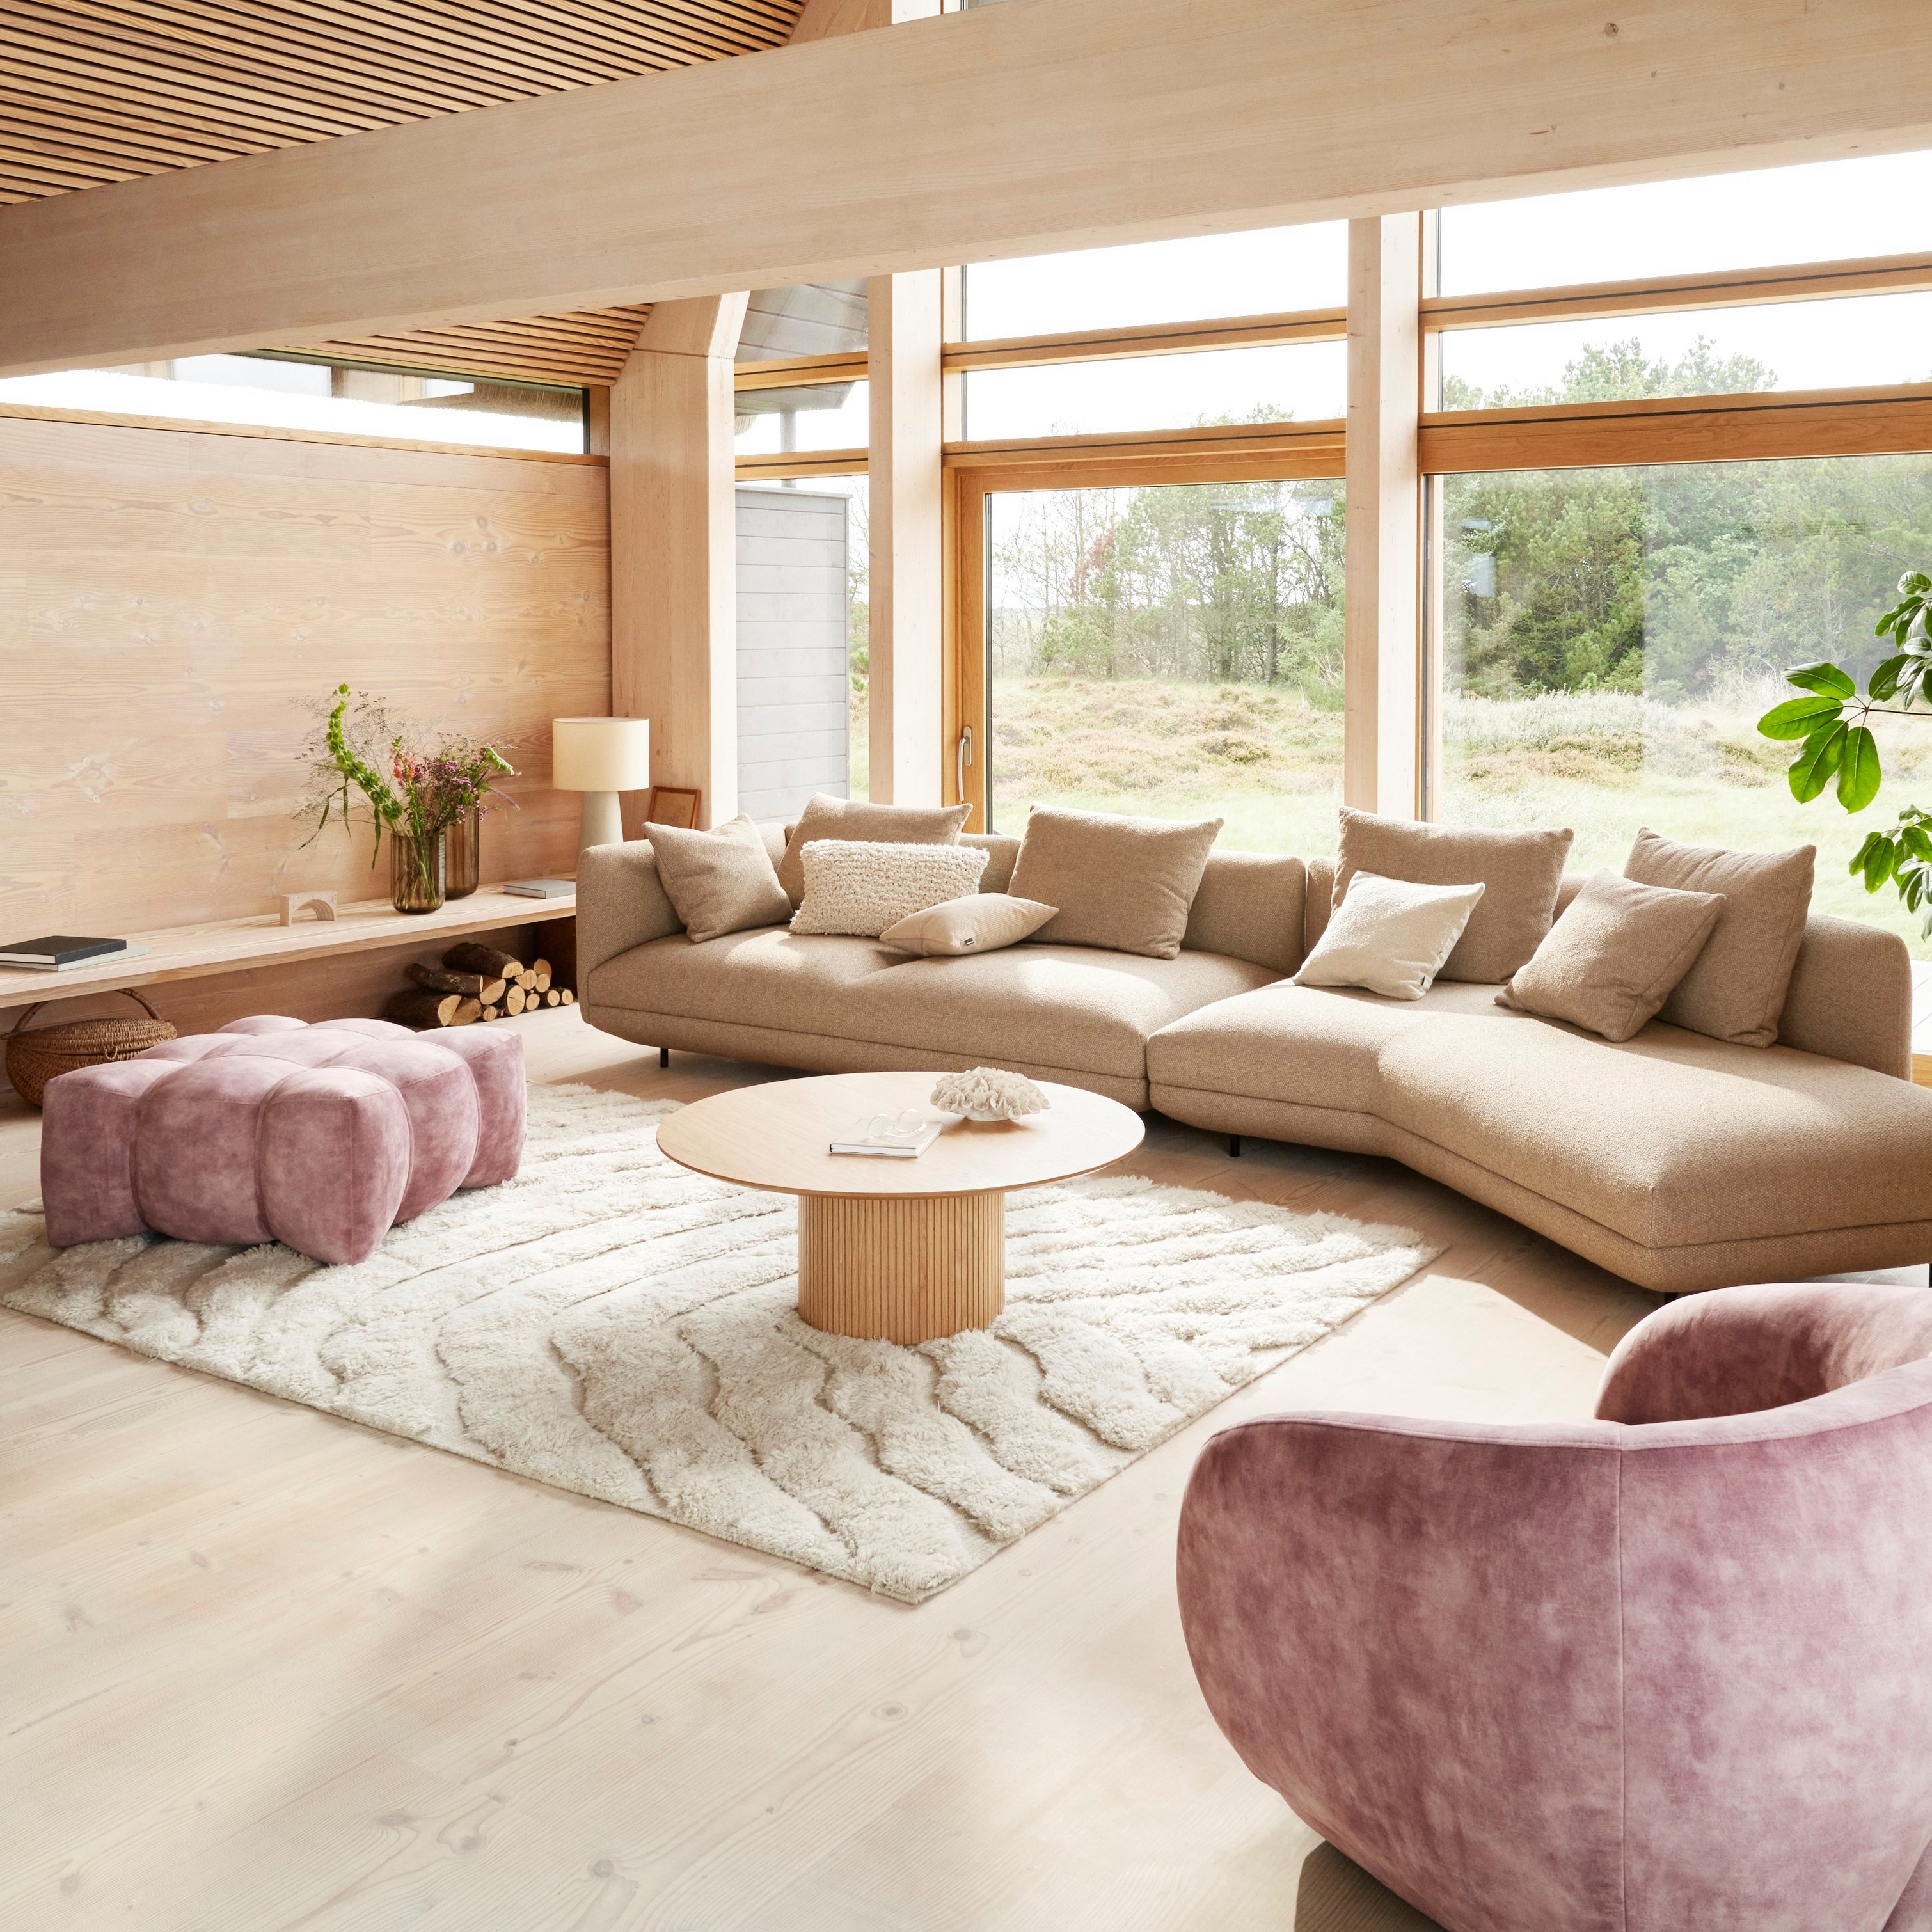 Ein gemütliches, modernes Wohnzimmer in einem Nur-Dach-Haus mit einem Salamanca Sofa, bezogen mit braunem Lazio Stoff.